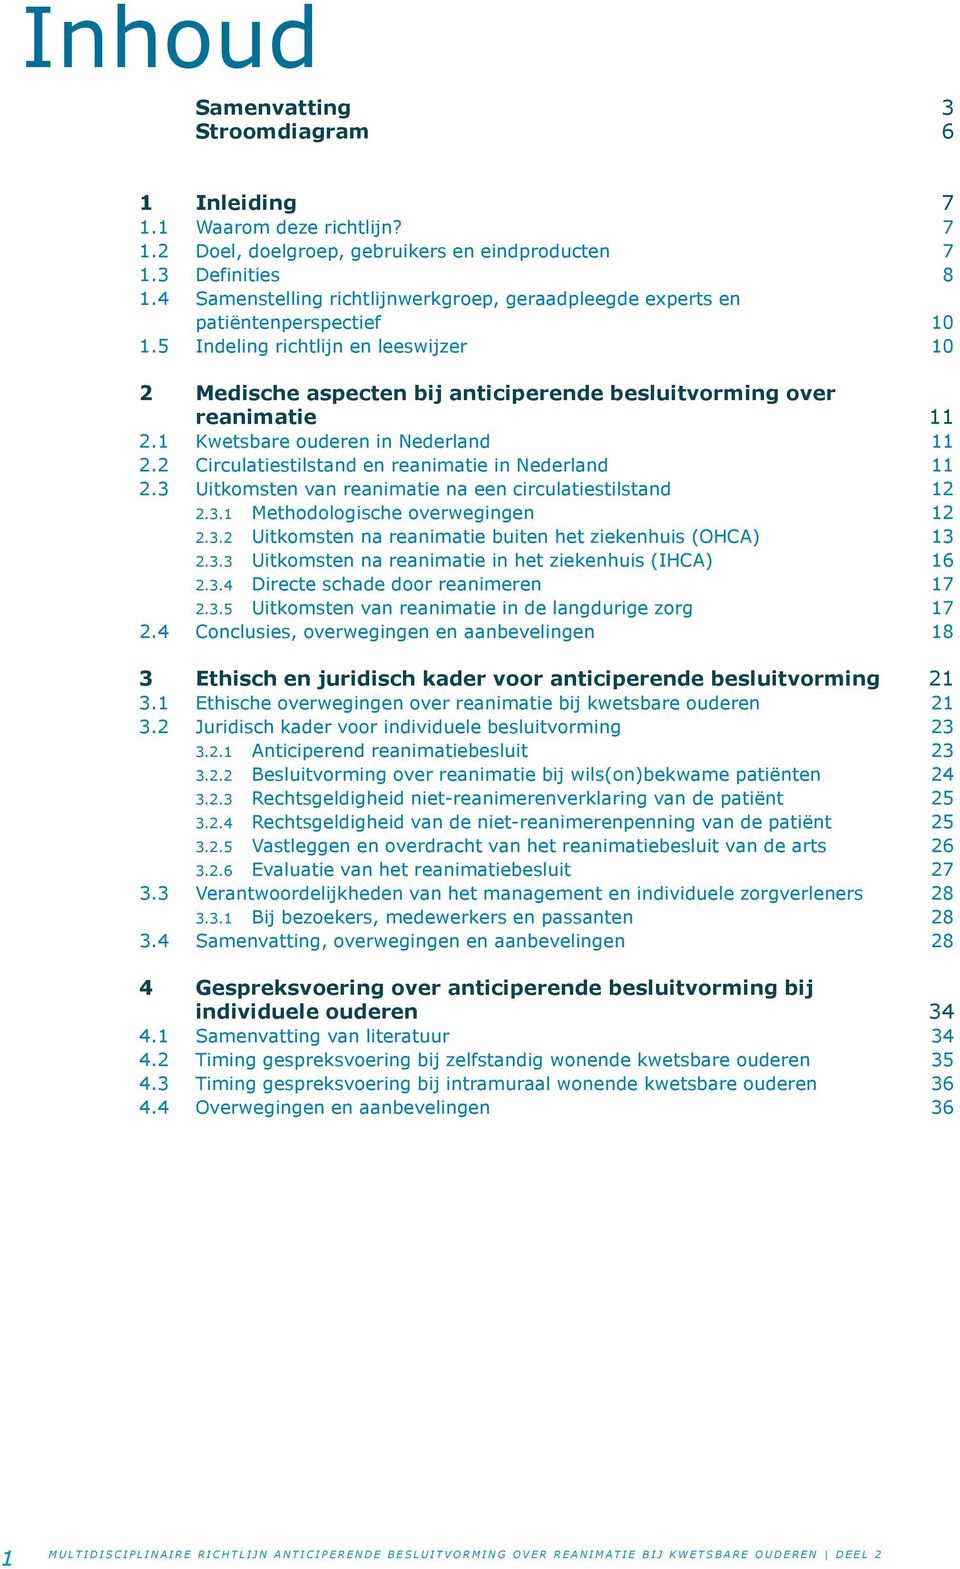 1 Kwetsbare ouderen in Nederland 11 2.2 Circulatiestilstand en reanimatie in Nederland 11 2.3 Uitkomsten van reanimatie na een circulatiestilstand 12 2.3.1 Methodologische overwegingen 12 2.3.2 Uitkomsten na reanimatie buiten het ziekenhuis (OHCA) 13 2.